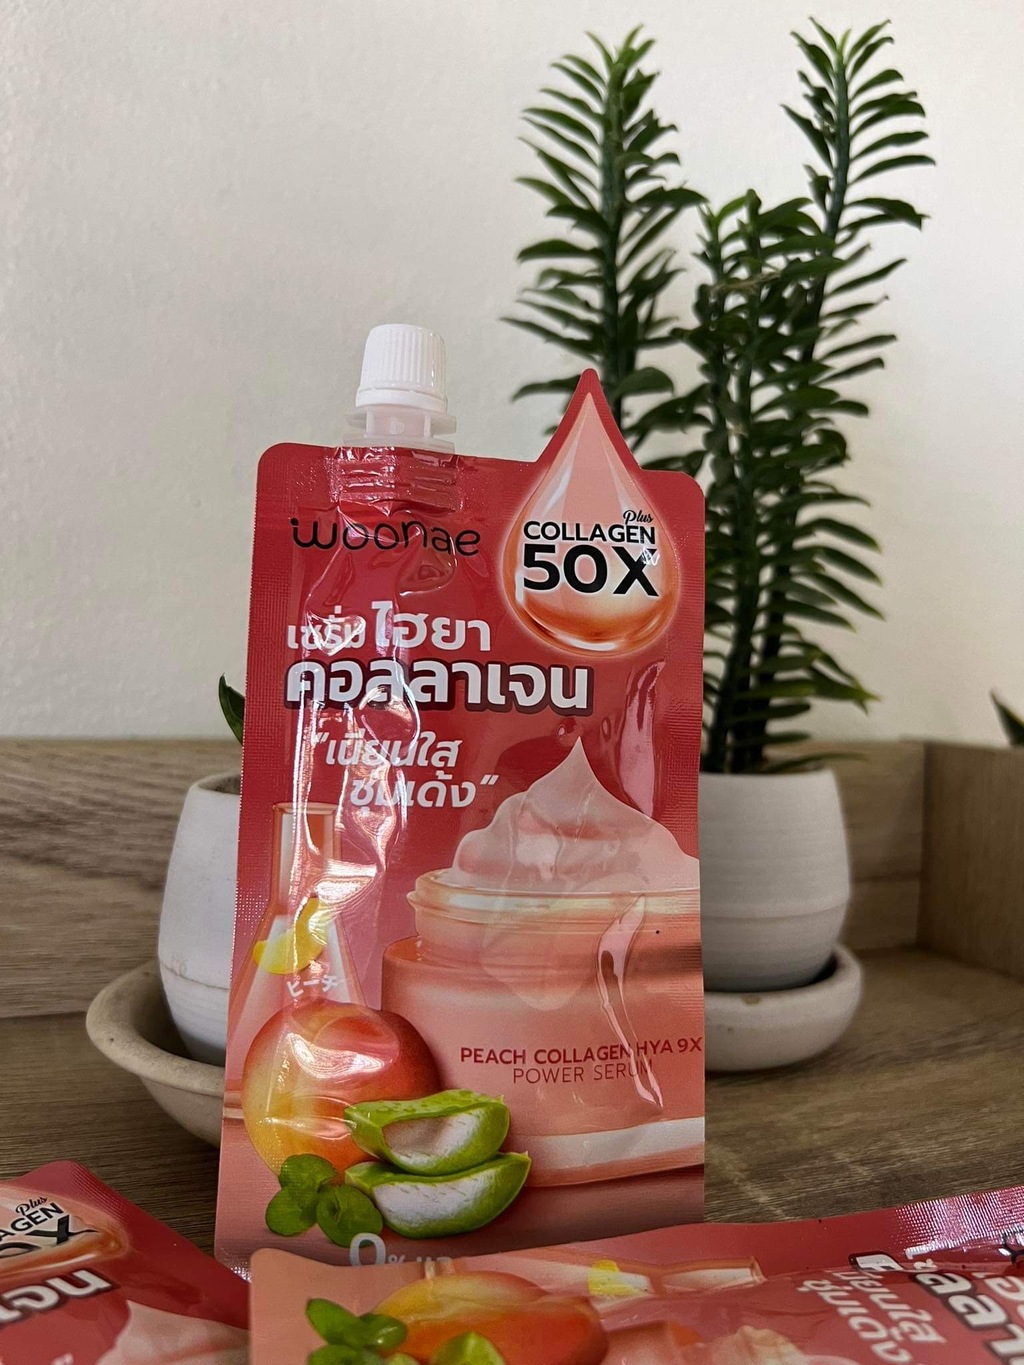 Woonae Peach Collagen Hya 9X Power Serum 50 g รีวิว